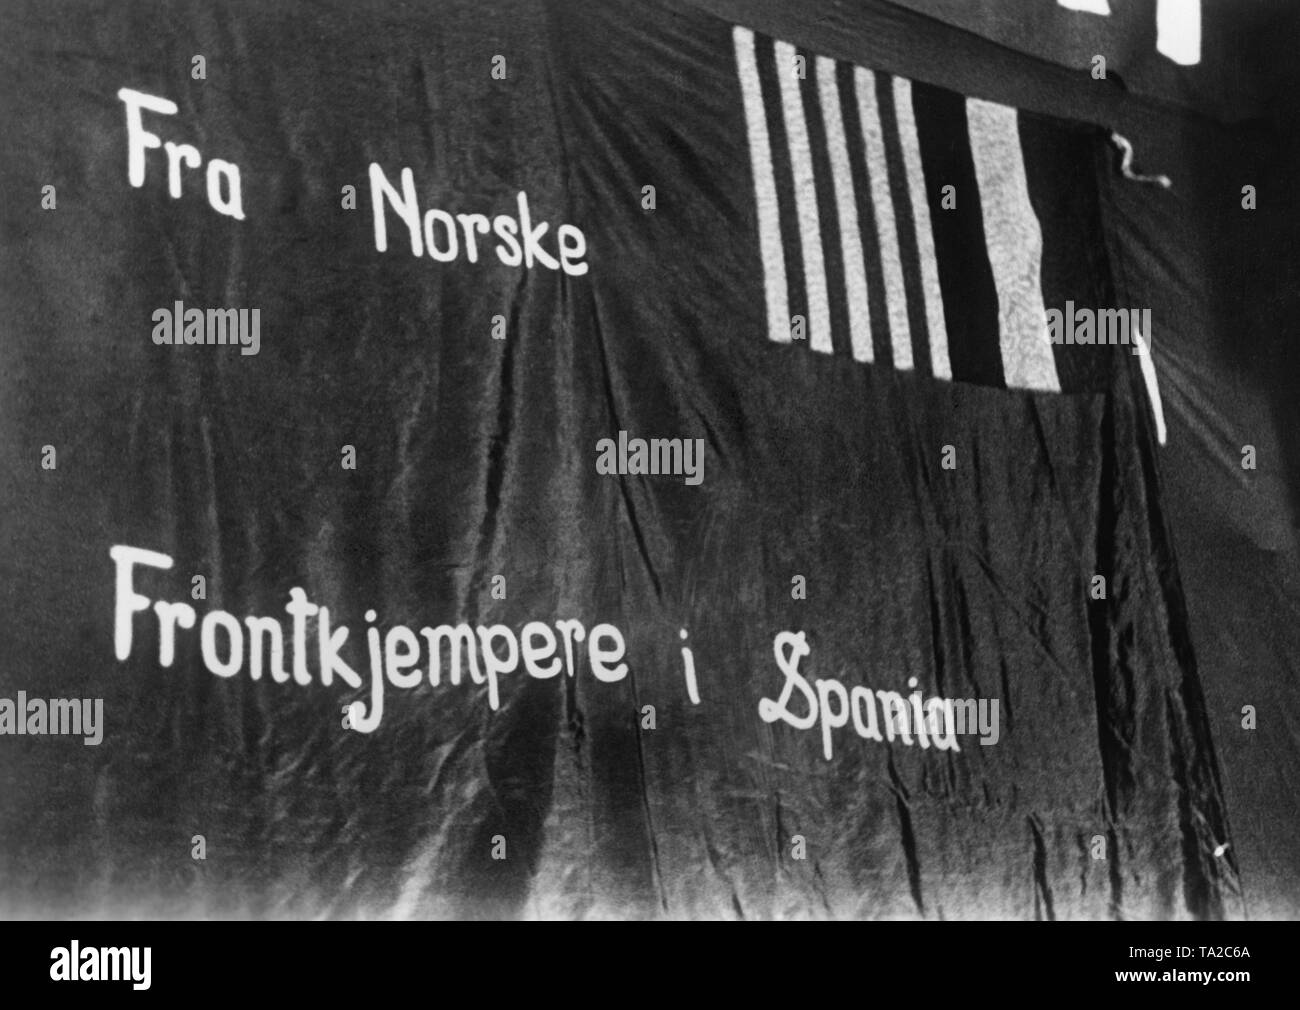 Foto di una bandiera norvegese di volontari delle Brigate internazionali nella guerra civile spagnola, 1937-1939. Il banner dice: "Come un combattente anteriore in Spagna da Norvegia". Foto Stock